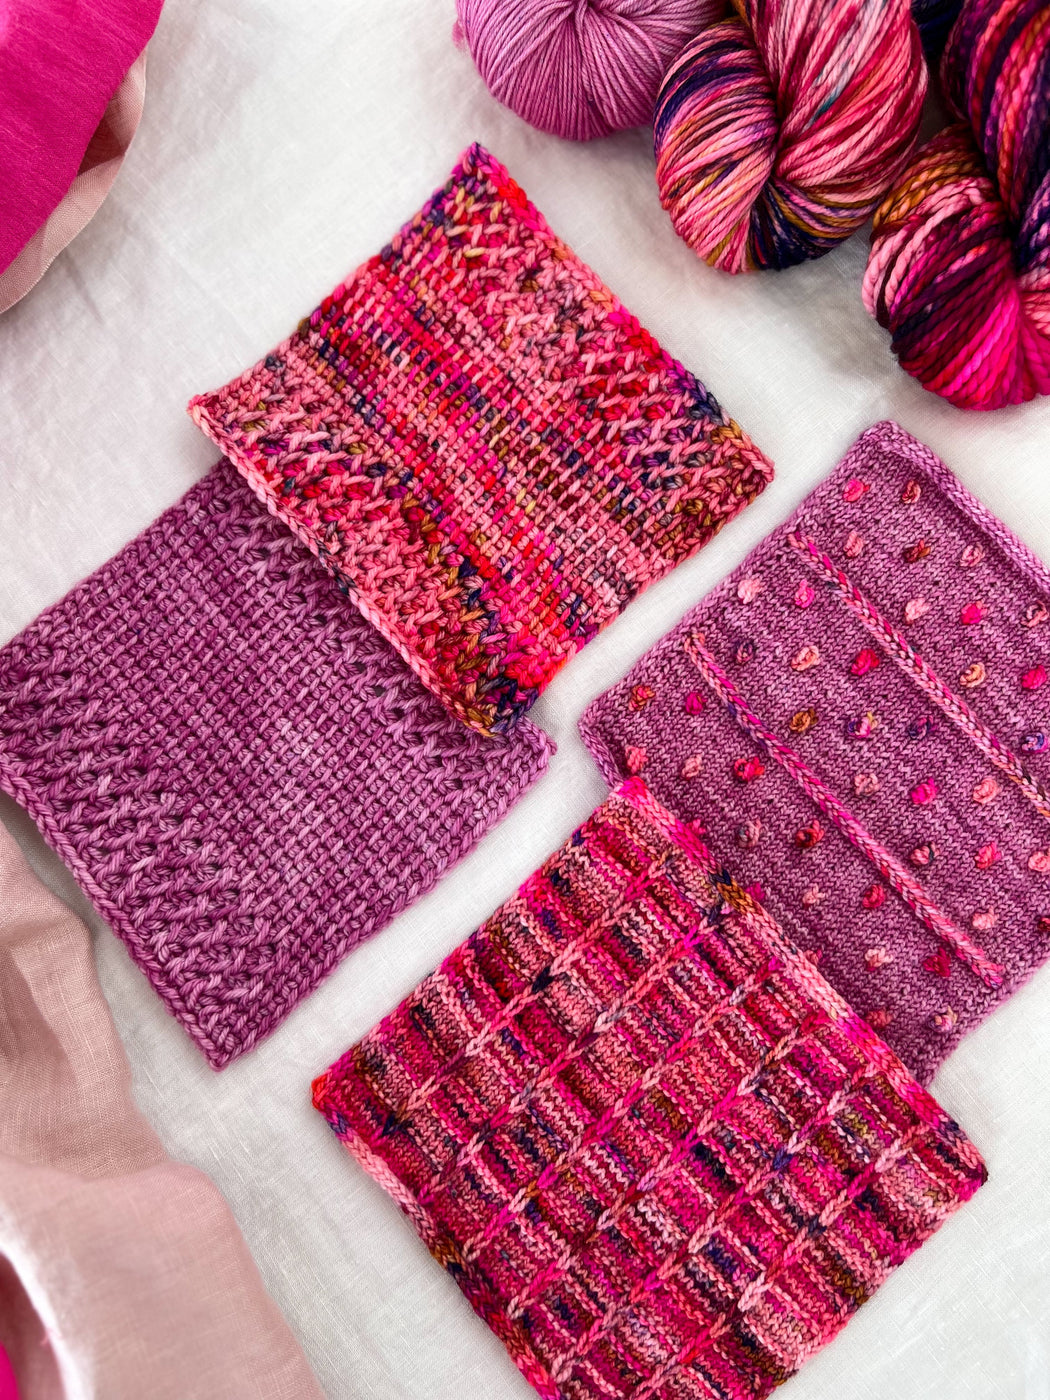 Siesta - Ruby and Roses Yarn - Hand Dyed Yarn